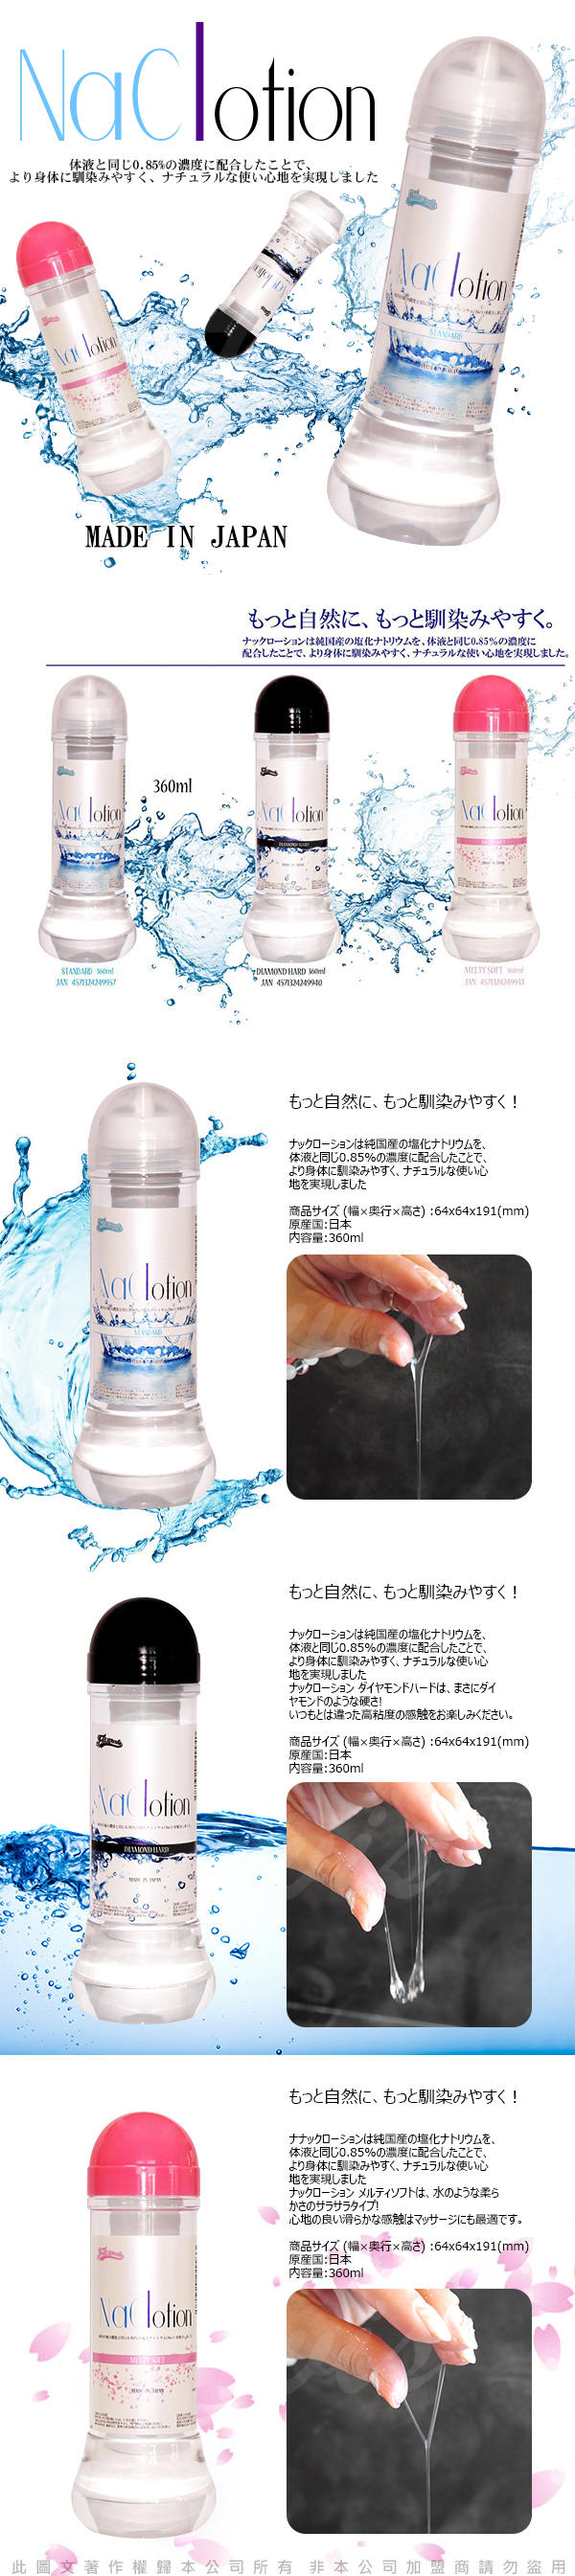 日本原裝NaClotion 自然感覺 潤滑液360ml STANDARD  中黏度/標準型 透明